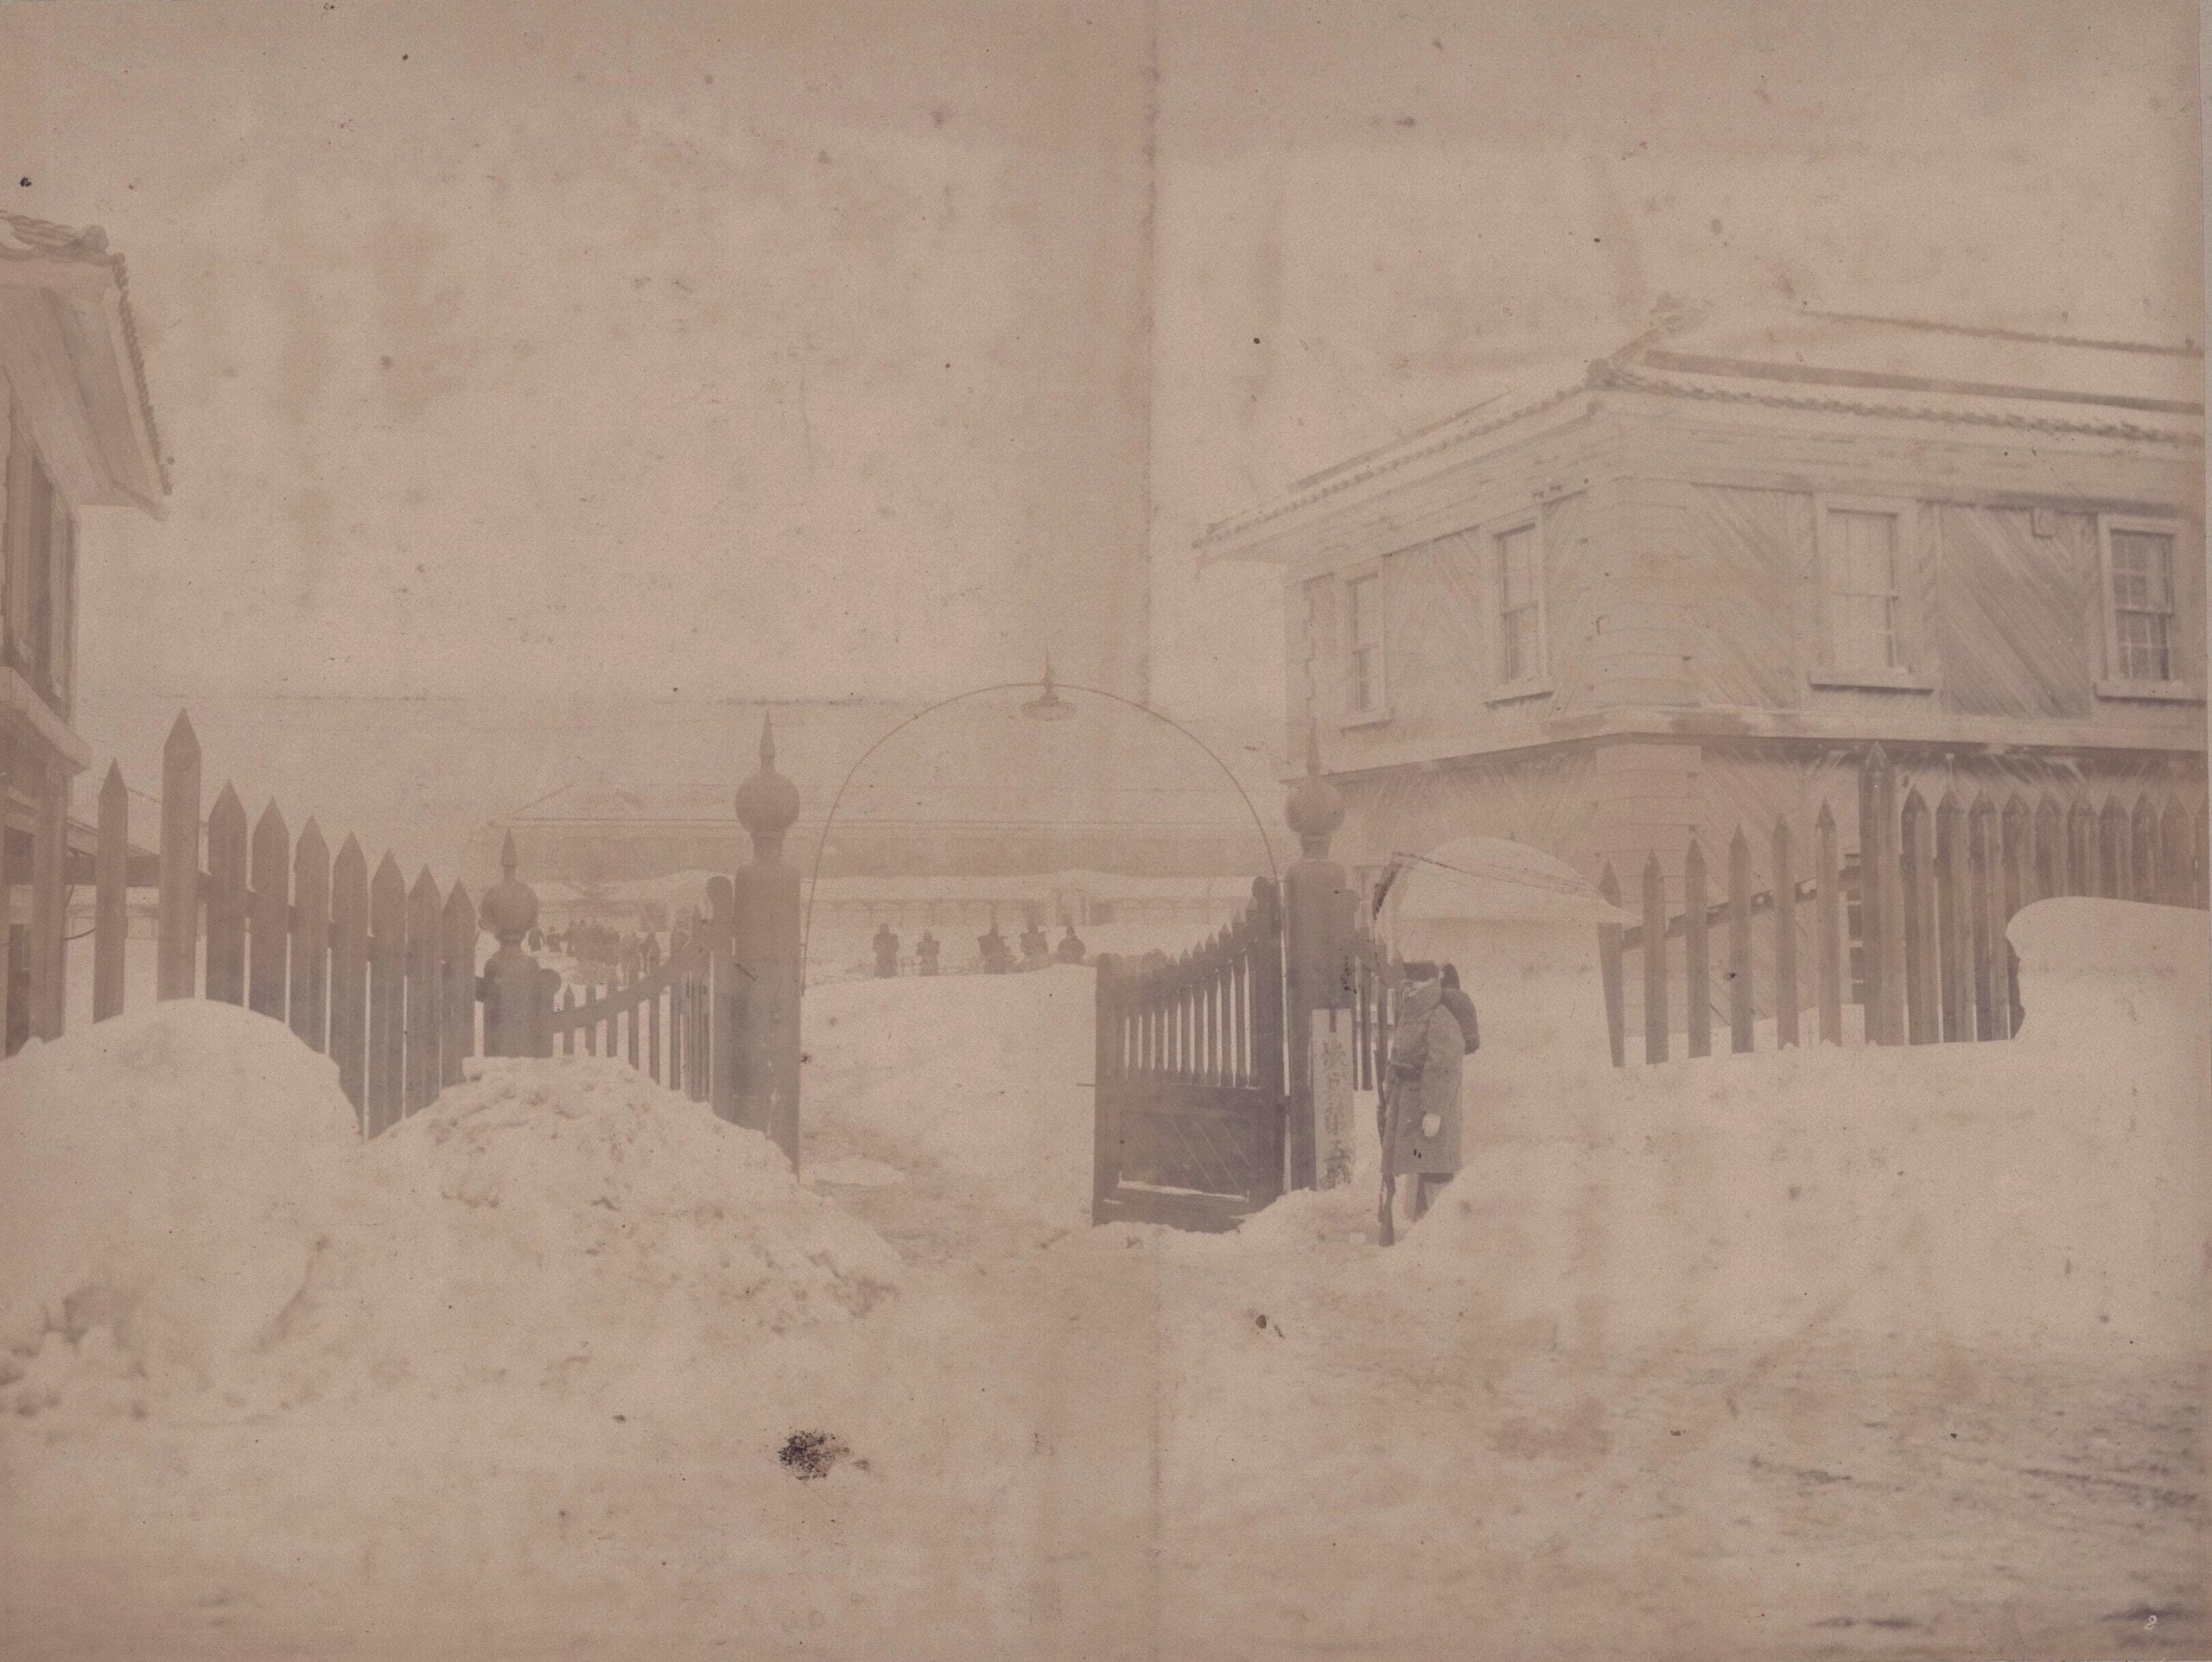 青森衛戍歩兵第五聯隊営門の光景（（陸地測量部、1902）青森県立図書館デジタルアーカイブ）の画像。 